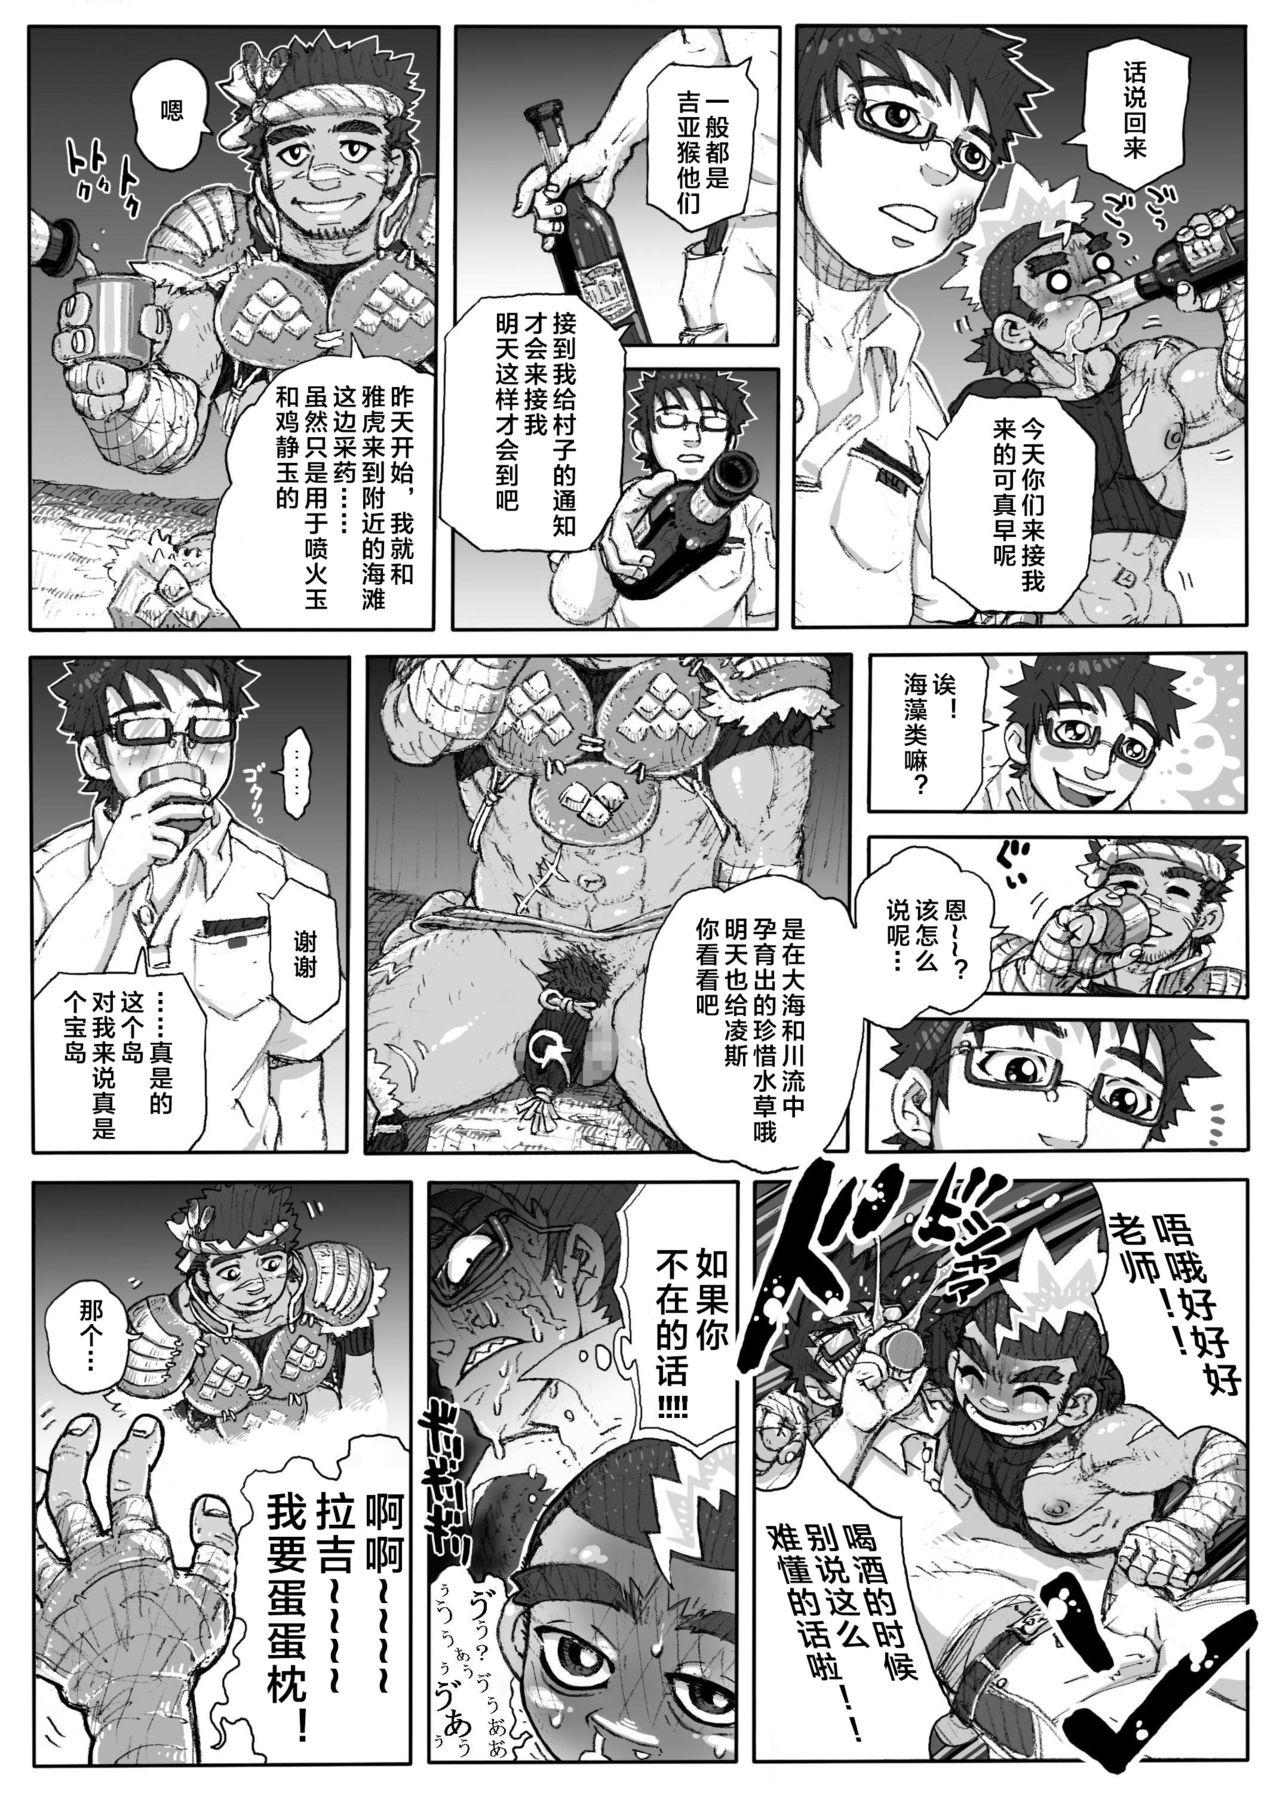 Outside Hepoe no Kuni kara 1 - Mizu no Gakusha Sensei, Hi no Buzoku no Saru ni Hazukashimerareru no Maki Milfporn - Page 11